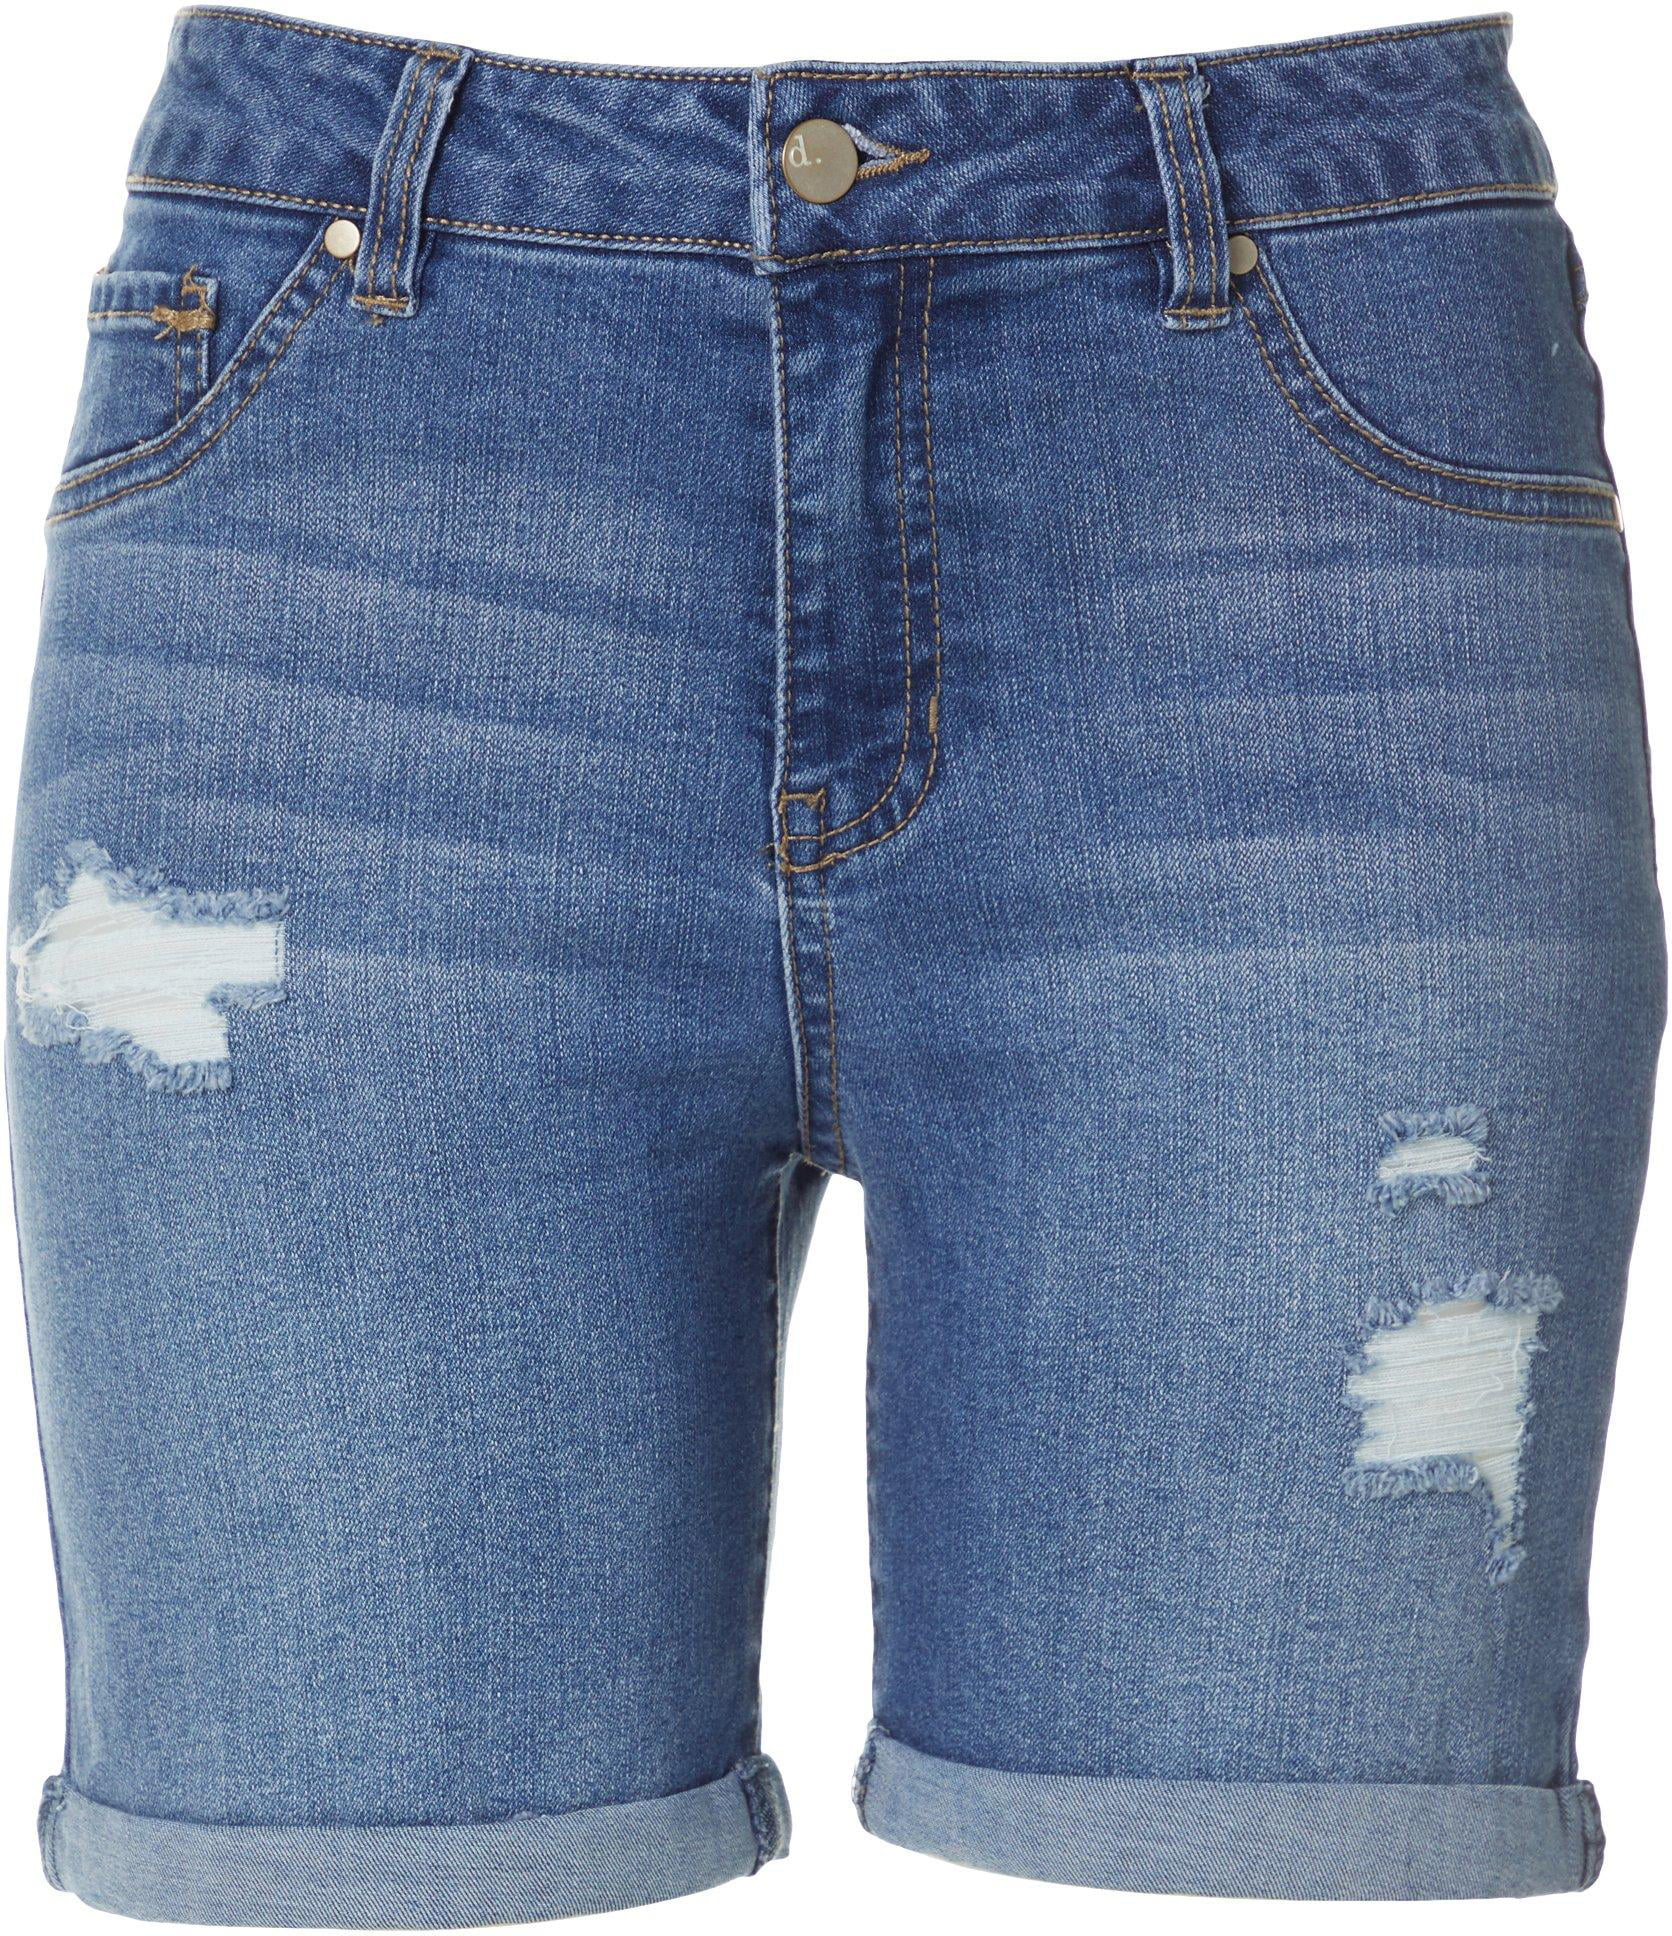 D. Jeans - D. Jeans Petite High Waist Destructed Shorts - Walmart.com ...